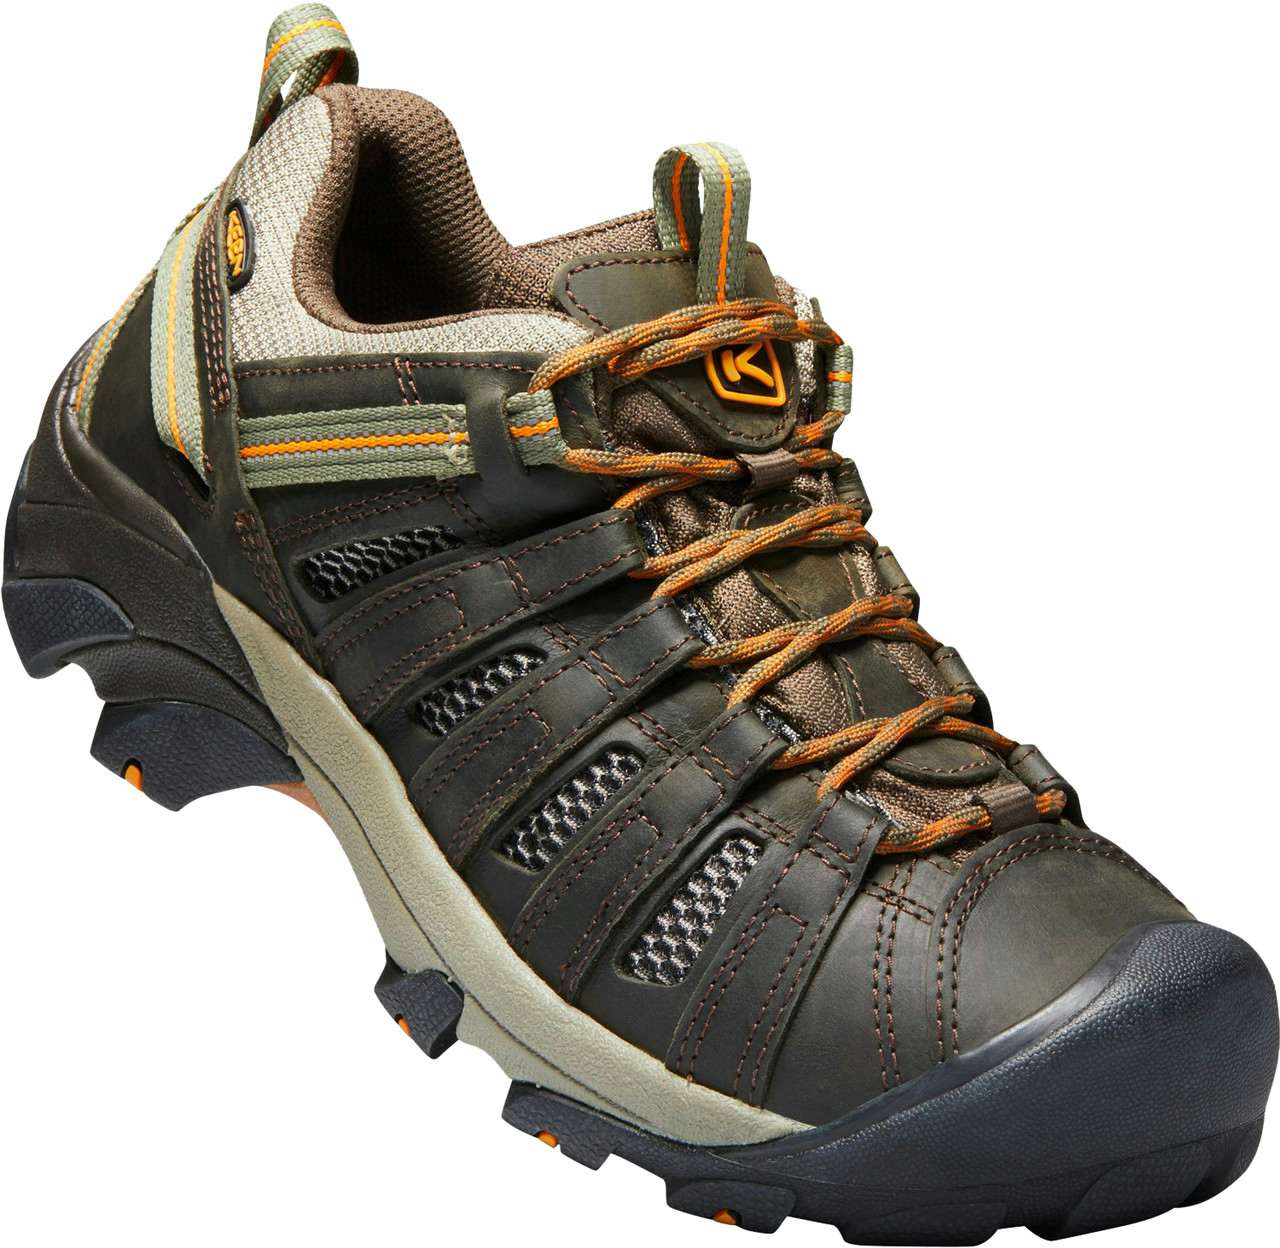 Chaussures de randonnée légère Voyageur Olive noire/Or inca